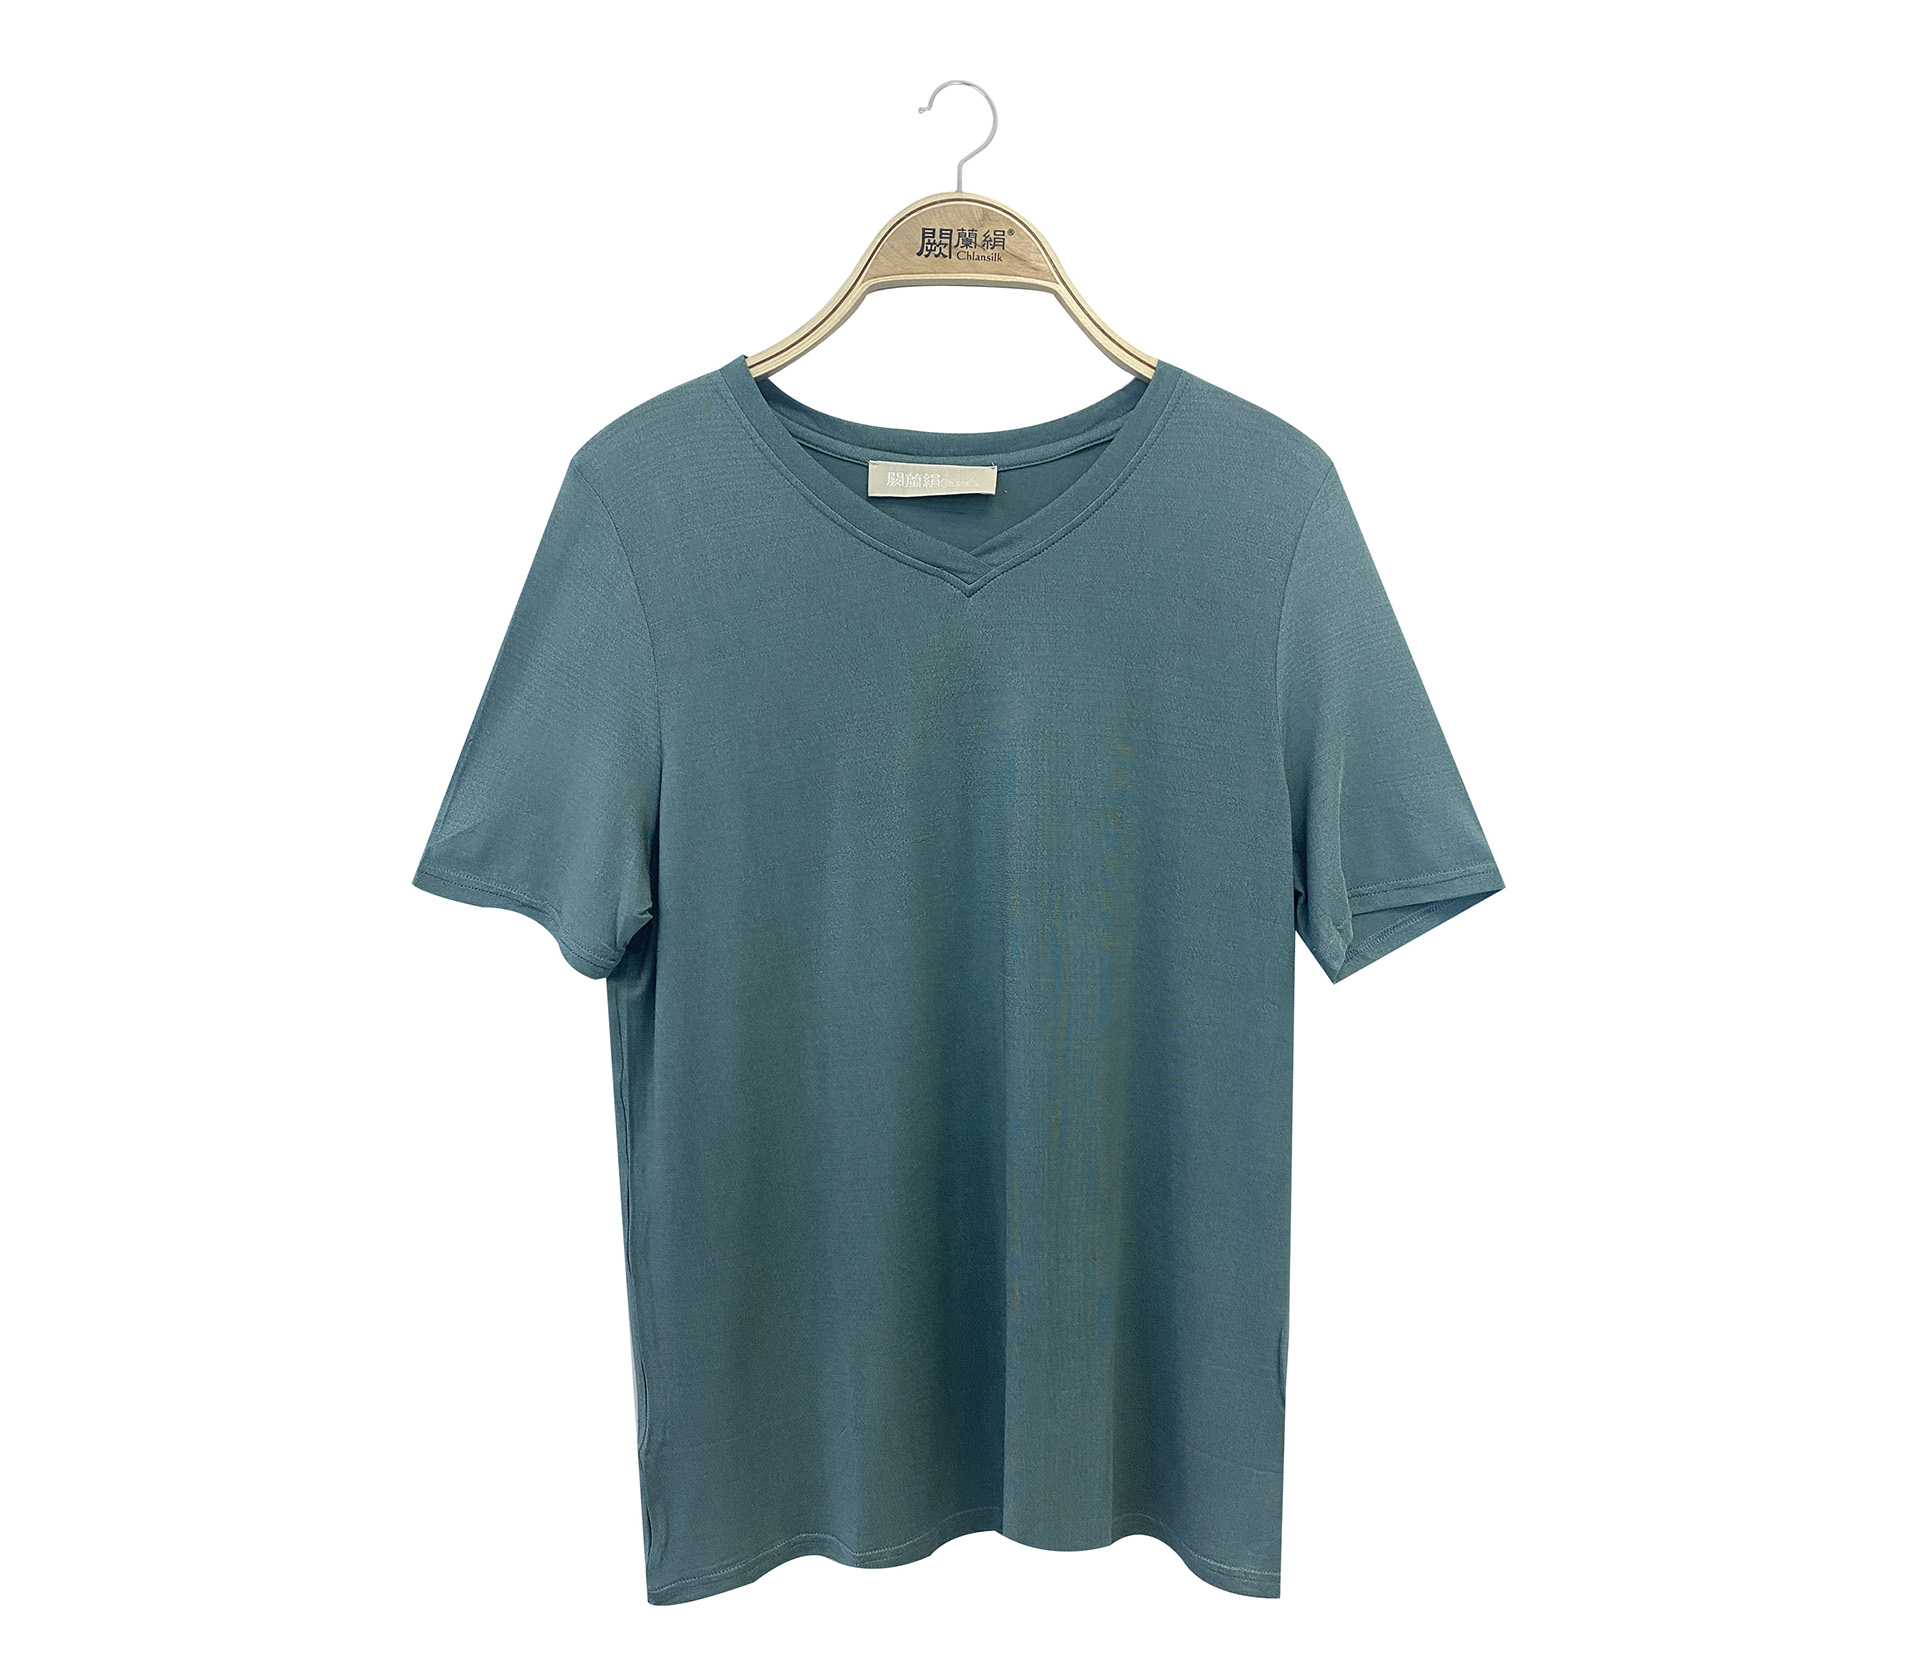 闕蘭絹石墨烯蠶絲V領短袖衛生衣 - 綠色 - M9911